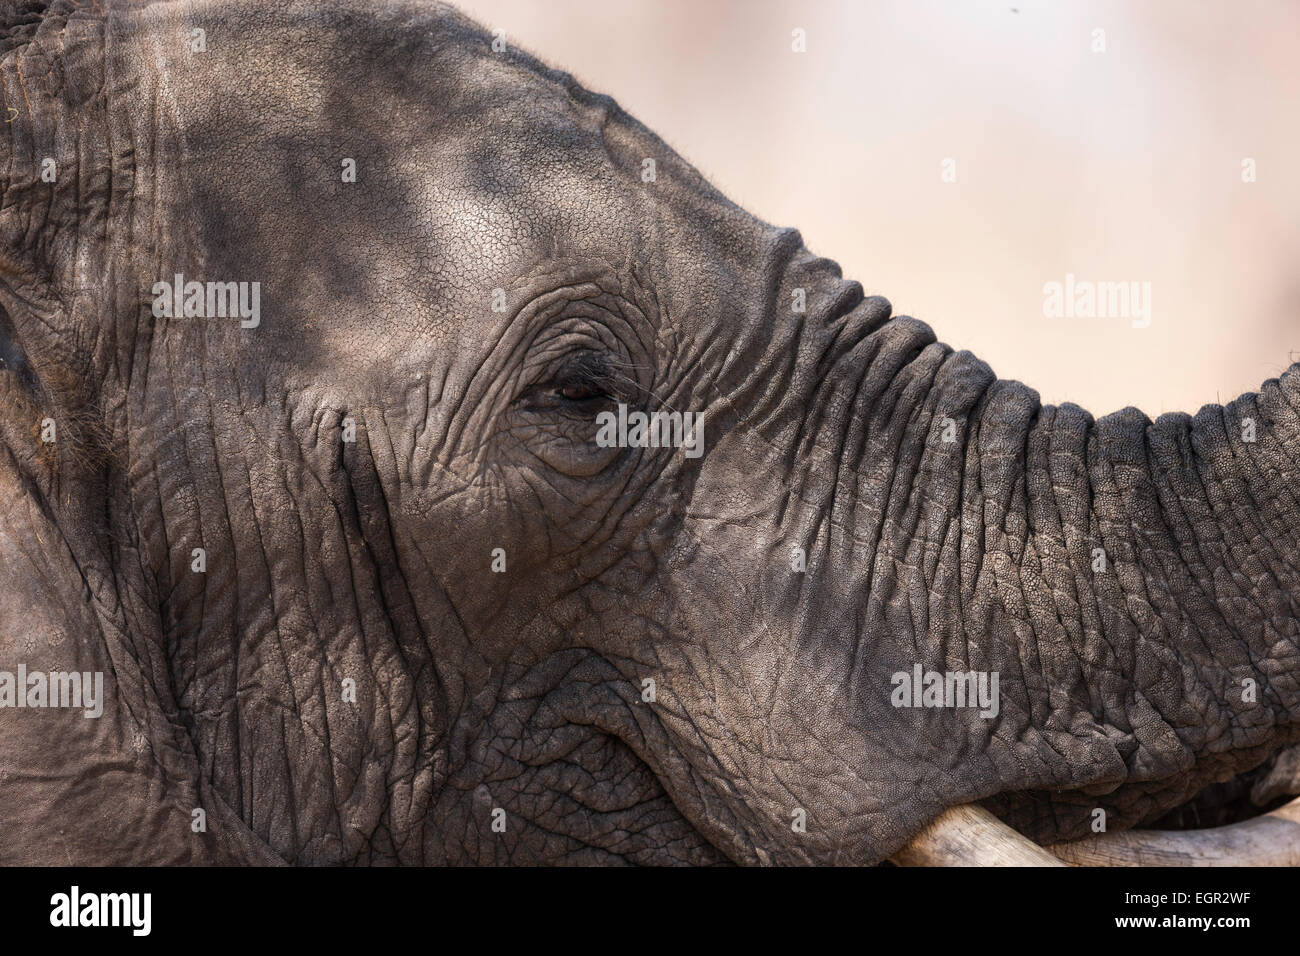 Retrato de elefante Foto de stock